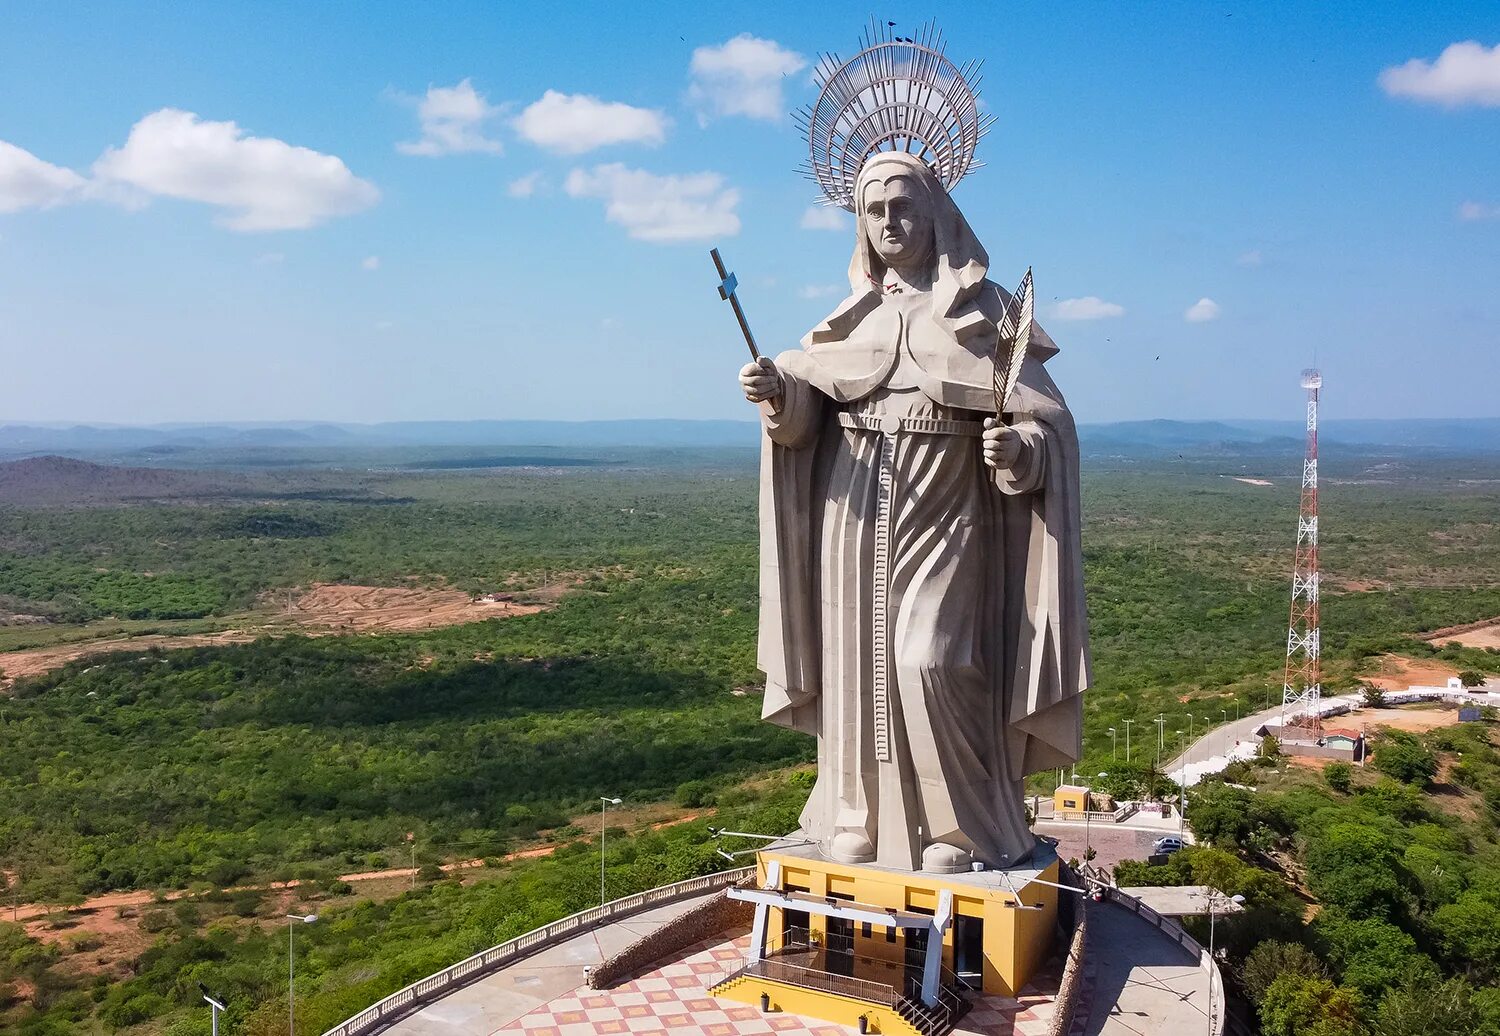 Большие статуи. Статуя Святой Риты Бразилия. Статуя единства — статуя Валлабхаи Пателя (Индия, штат Гуджарат), 240 м. Статуя . Лечжун-Сасачжа — статуя Будды. Статуя Святой Риты, 50 метров, Бразилия.